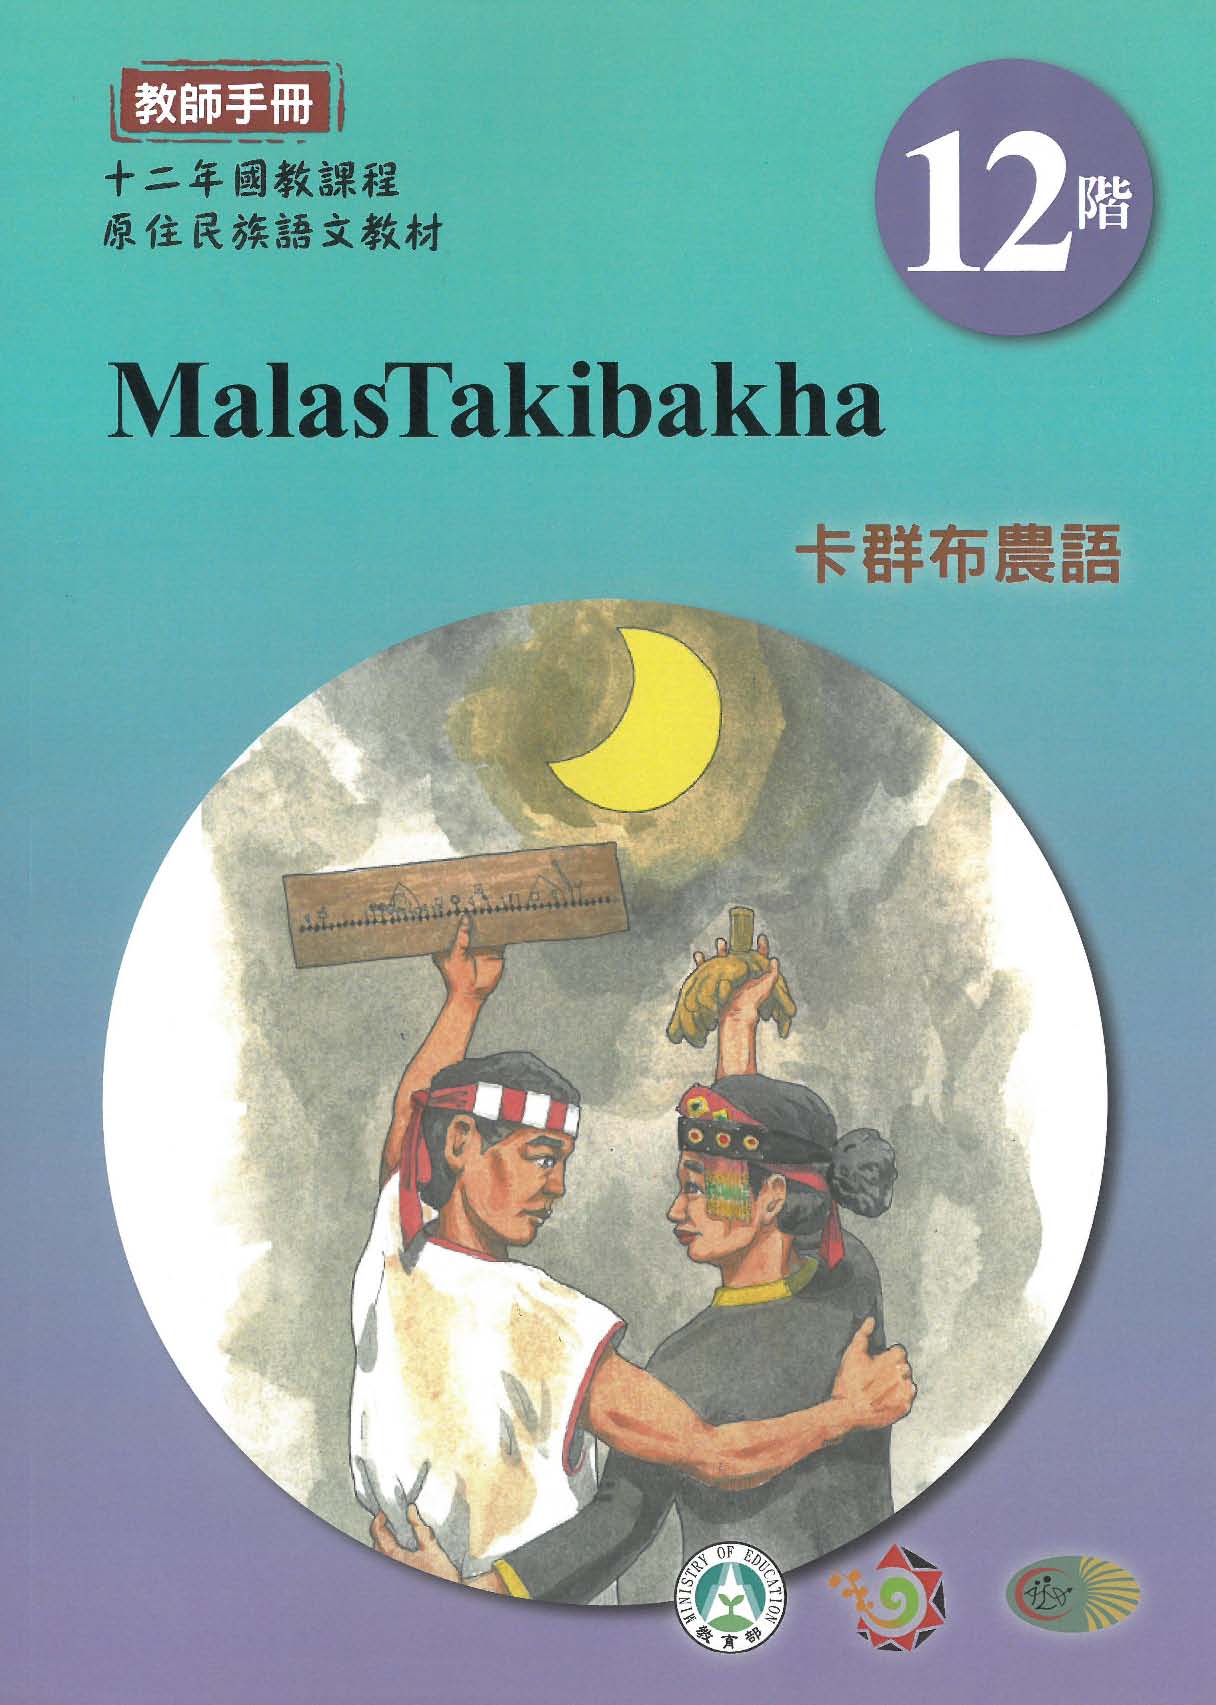 十二年國教原住民族語文教材 卡群布農語 教師手冊 第12階